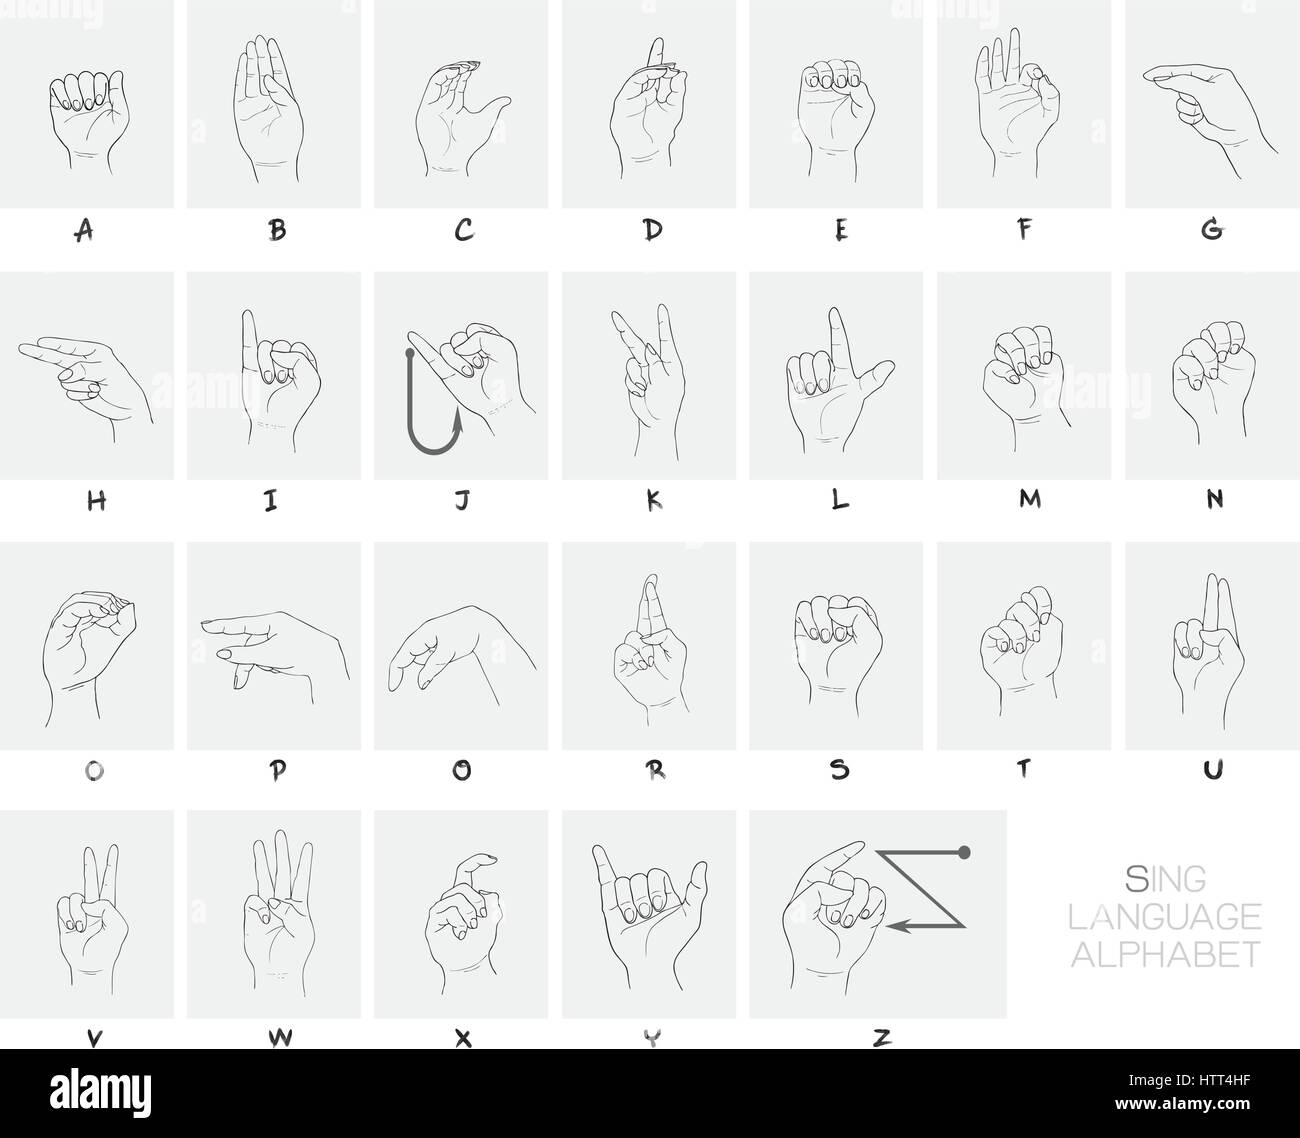 Hand gezeichnete Skizze des Fingers Rechtschreibung das Alphabet in amerikanischer Gebärdensprache, Isolated on White Background. Stock Vektor